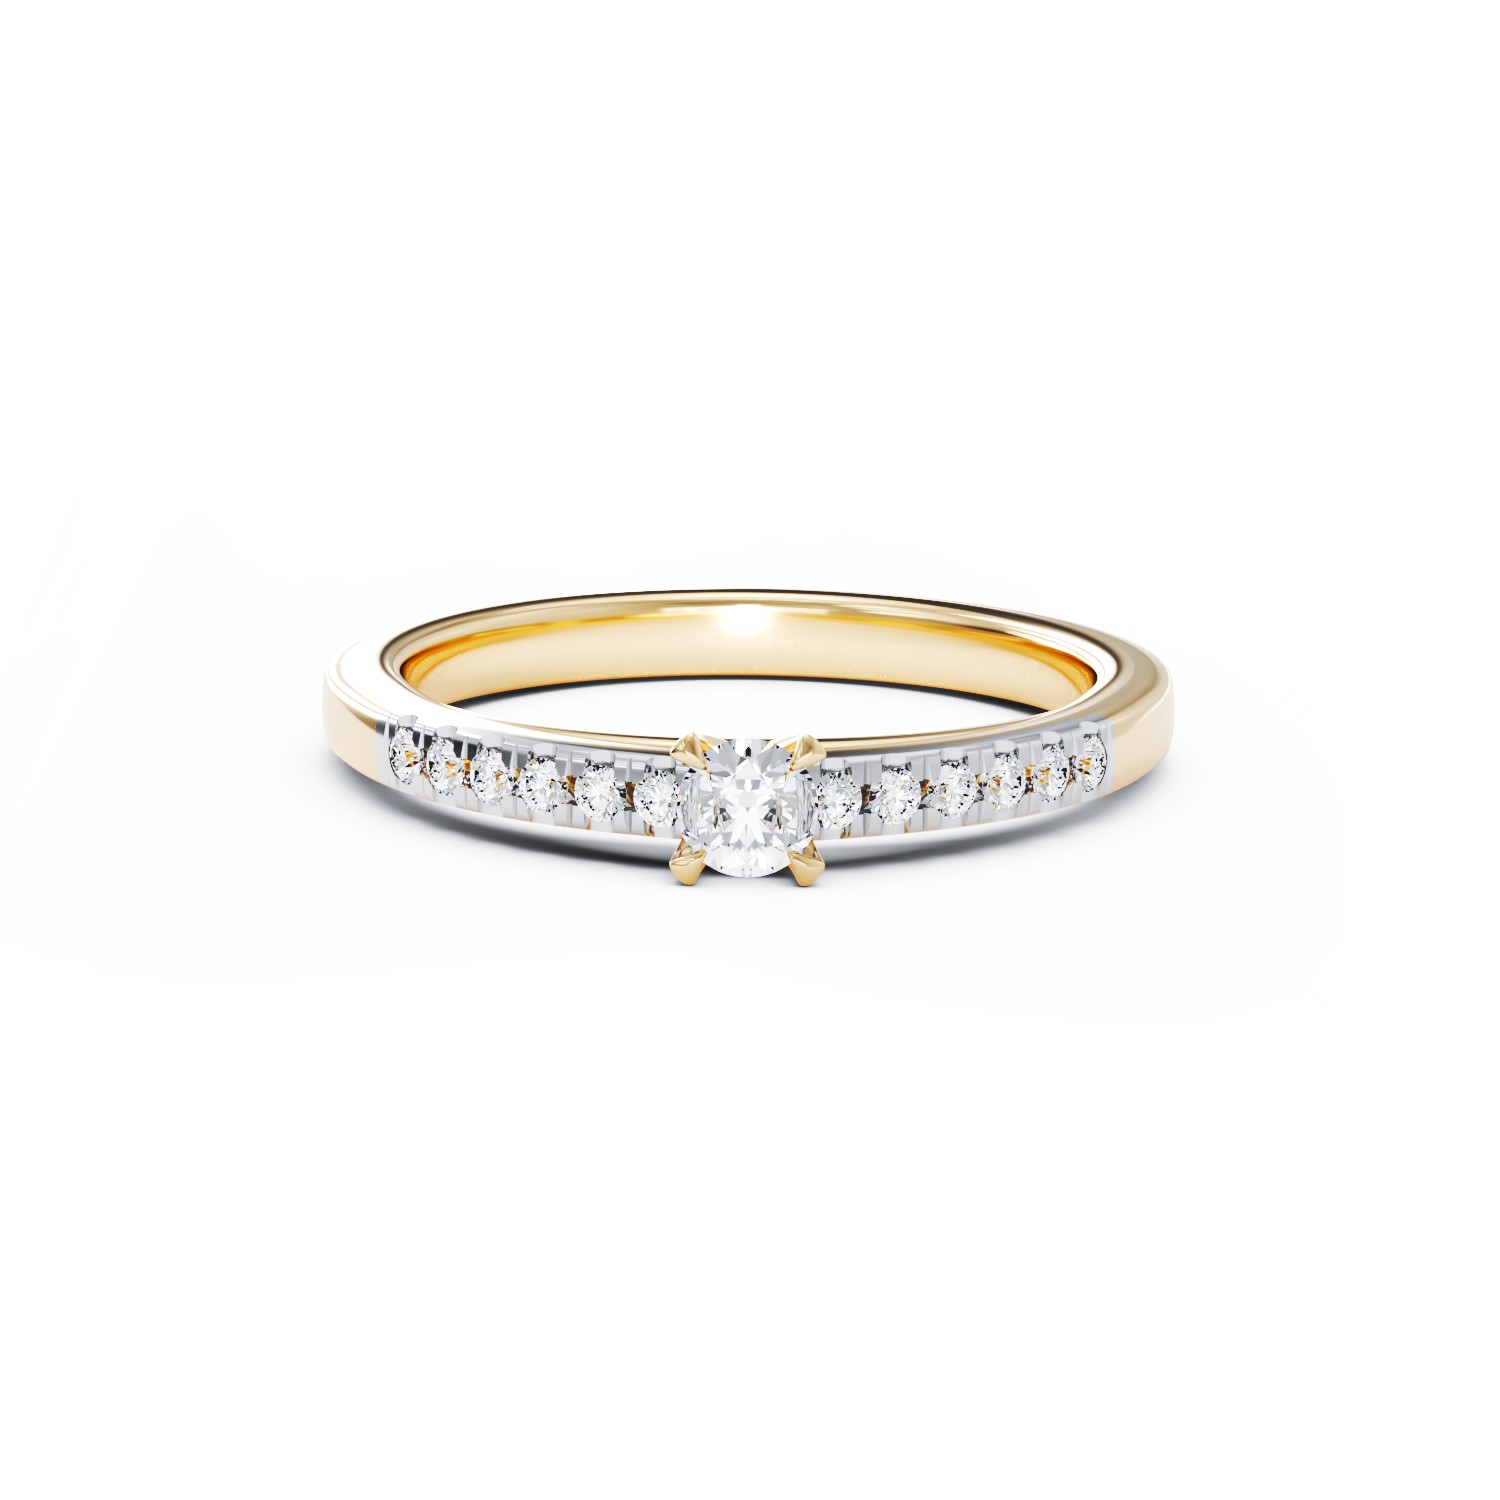 Eljegyzési gyűrű 18K-os sárga aranyból 0,24ct gyémánttal és 0,135ct gyémánttal. Gramm: 2,95